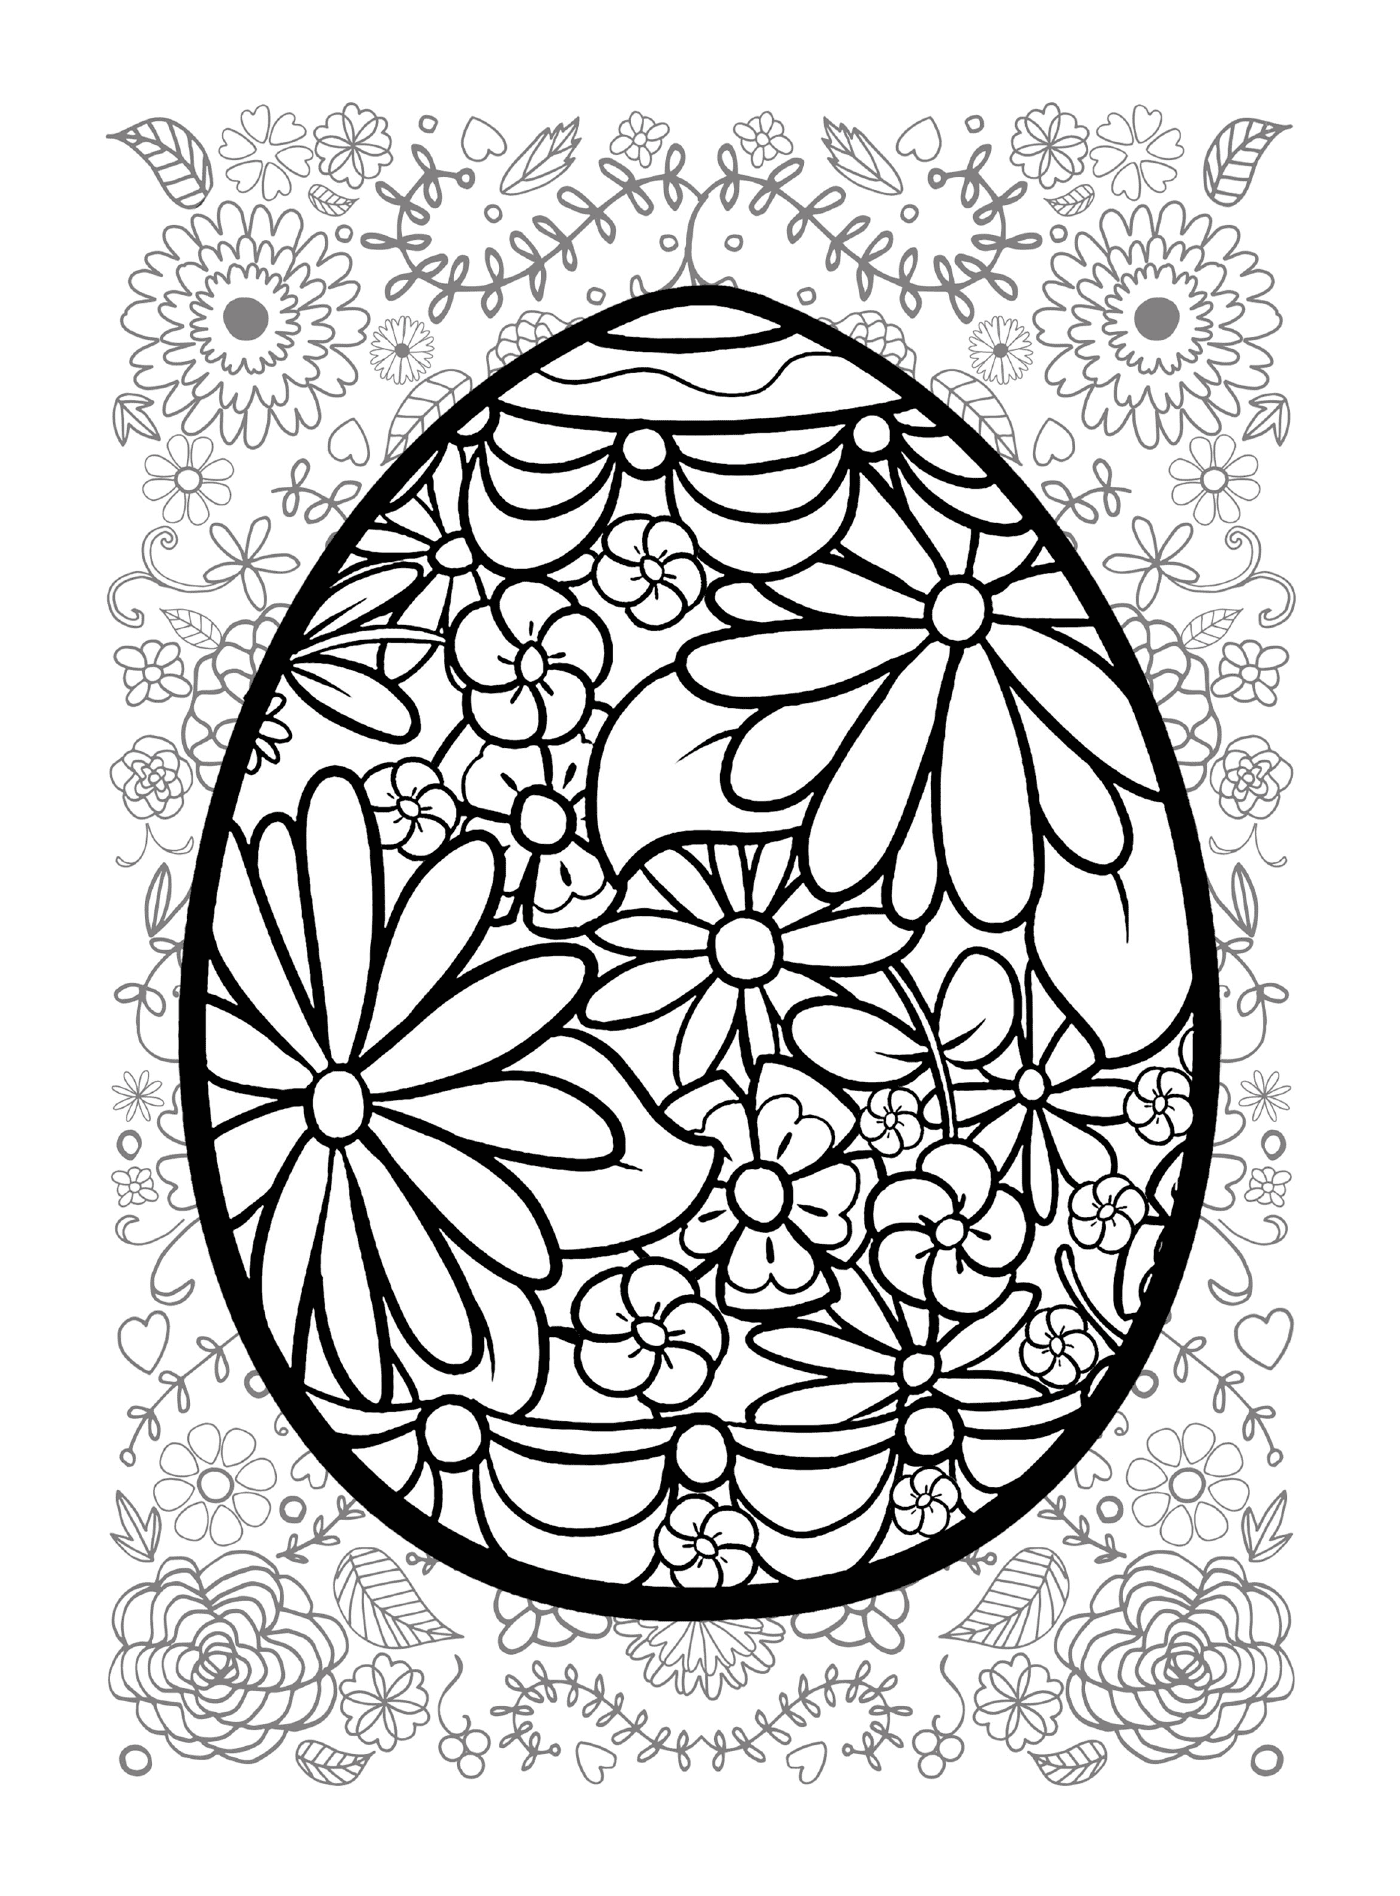  Huevo de Pascua con fondo florido 